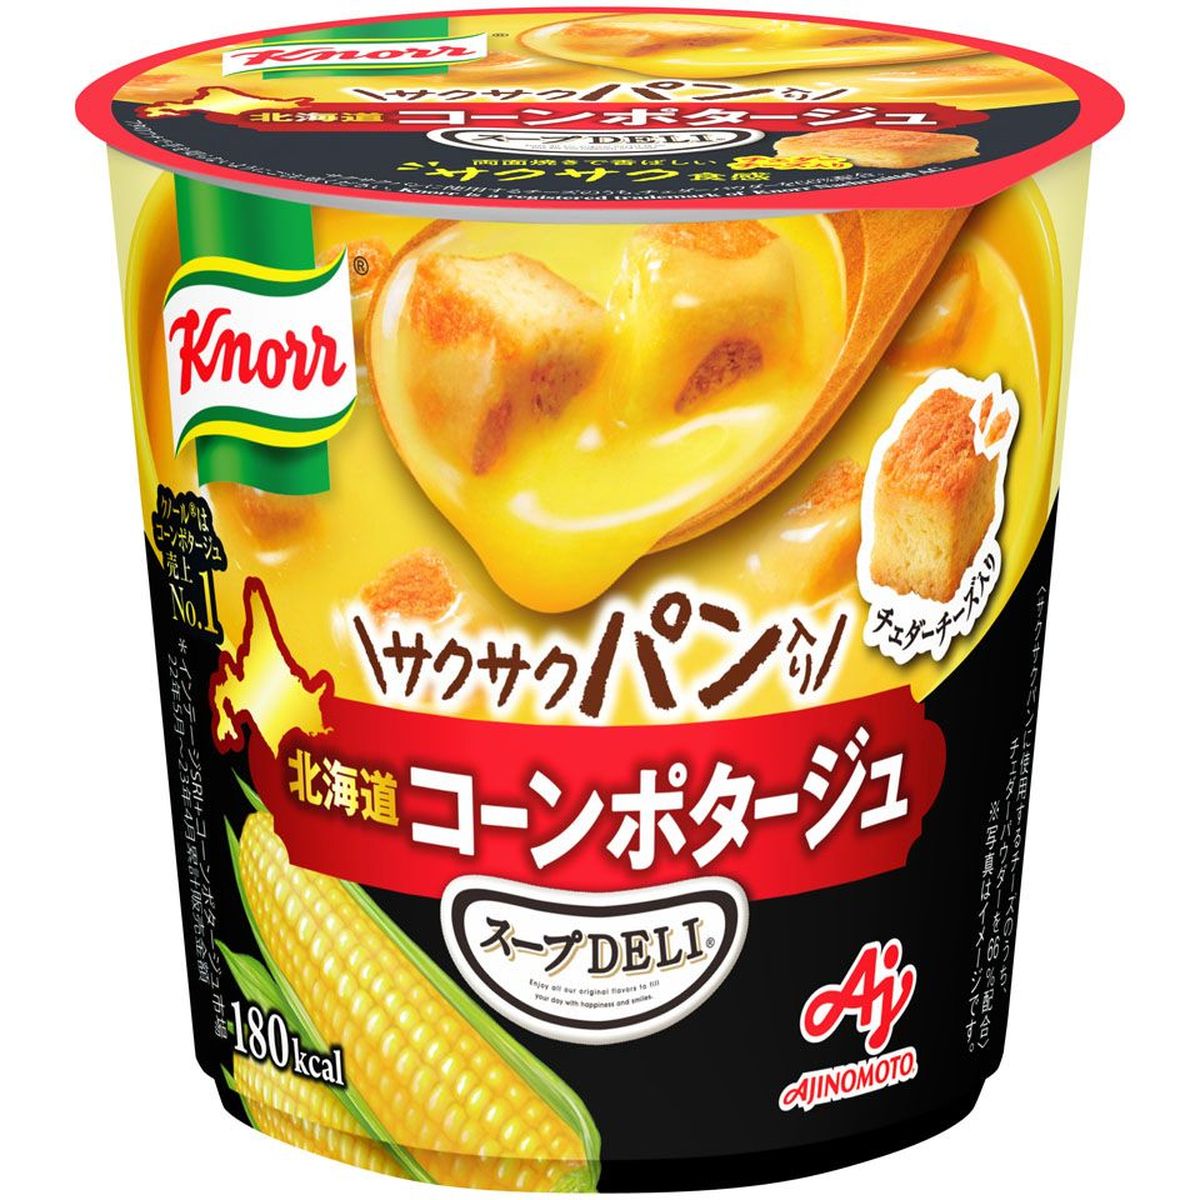 【6個入リ】味ノ素 クノールスープデリ サクサクパン入コーンポタージュ 38.2g